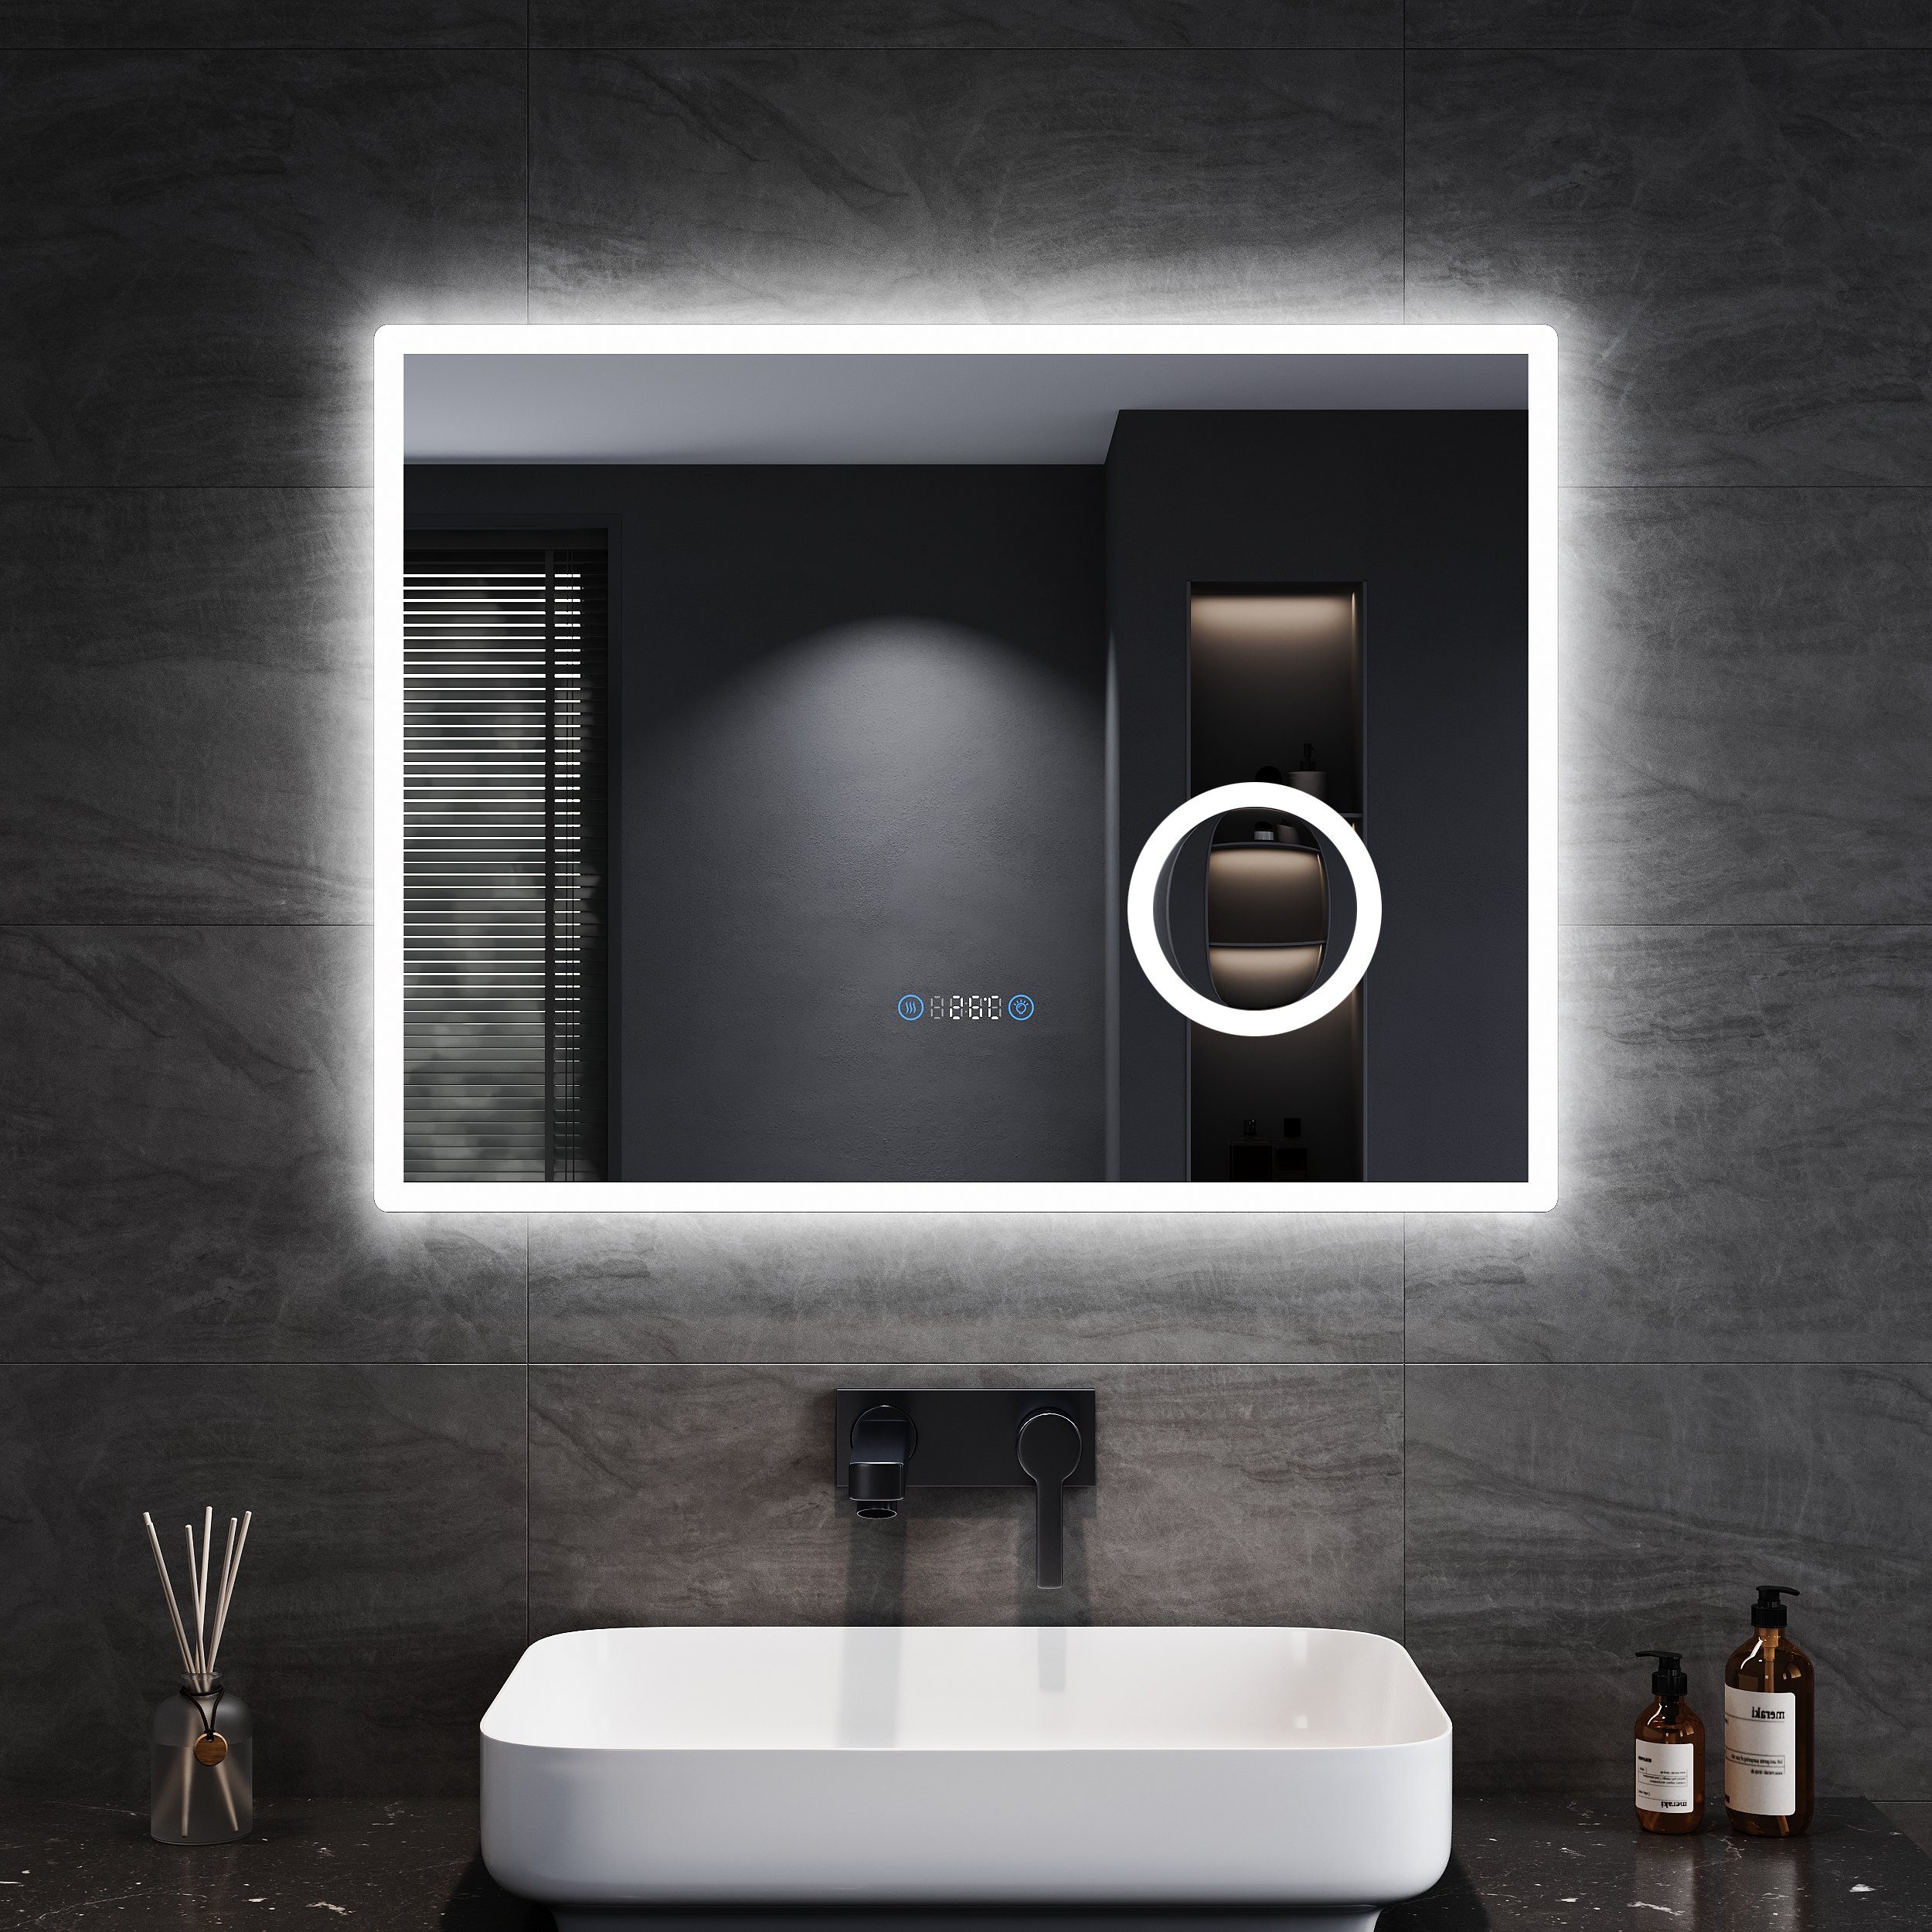 Badspiegel 80/100x60cm mit SONNI LED Uhr, IP44 Badspiegel Touch, mit Temperatur, Vergrößerung, einstellbar, Helligkeit Beschlagfrei, mit Beleuchtung 3-facher